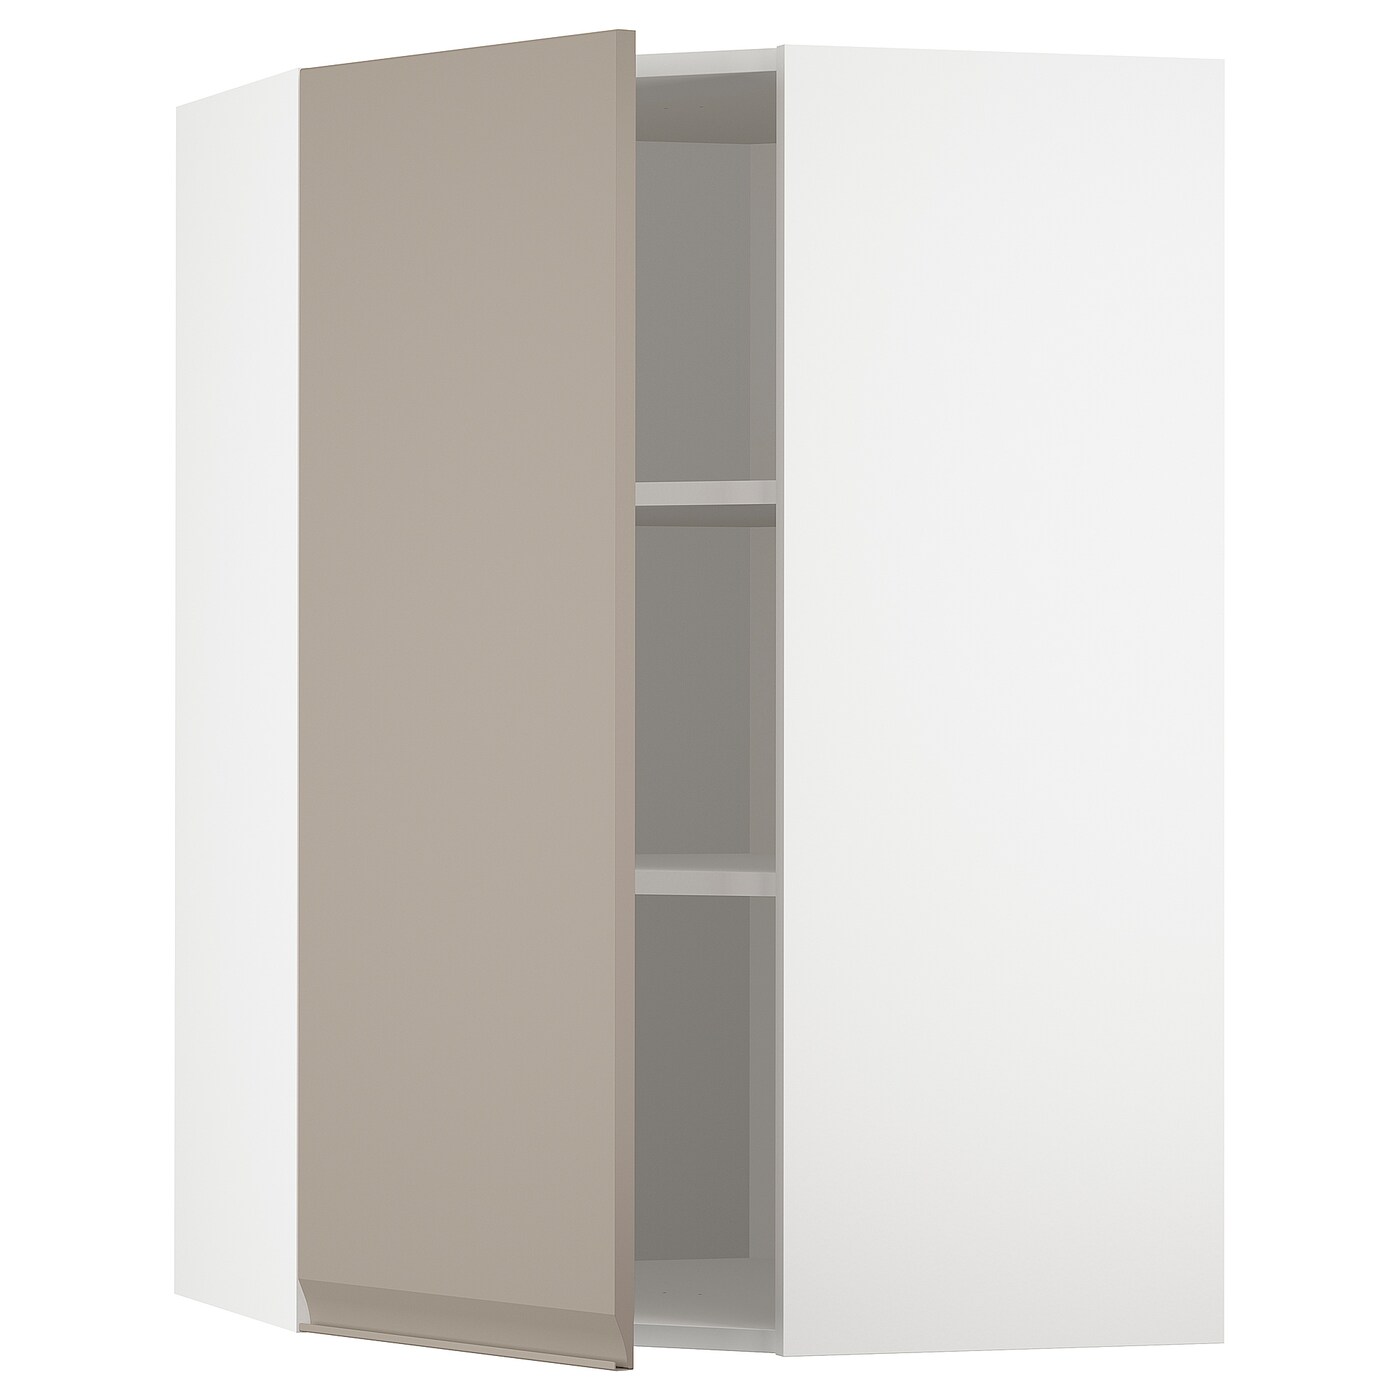 Угловой навесной шкаф с полками - METOD  IKEA/  МЕТОД ИКЕА, 100х68 см, юелый/светло-коричневый